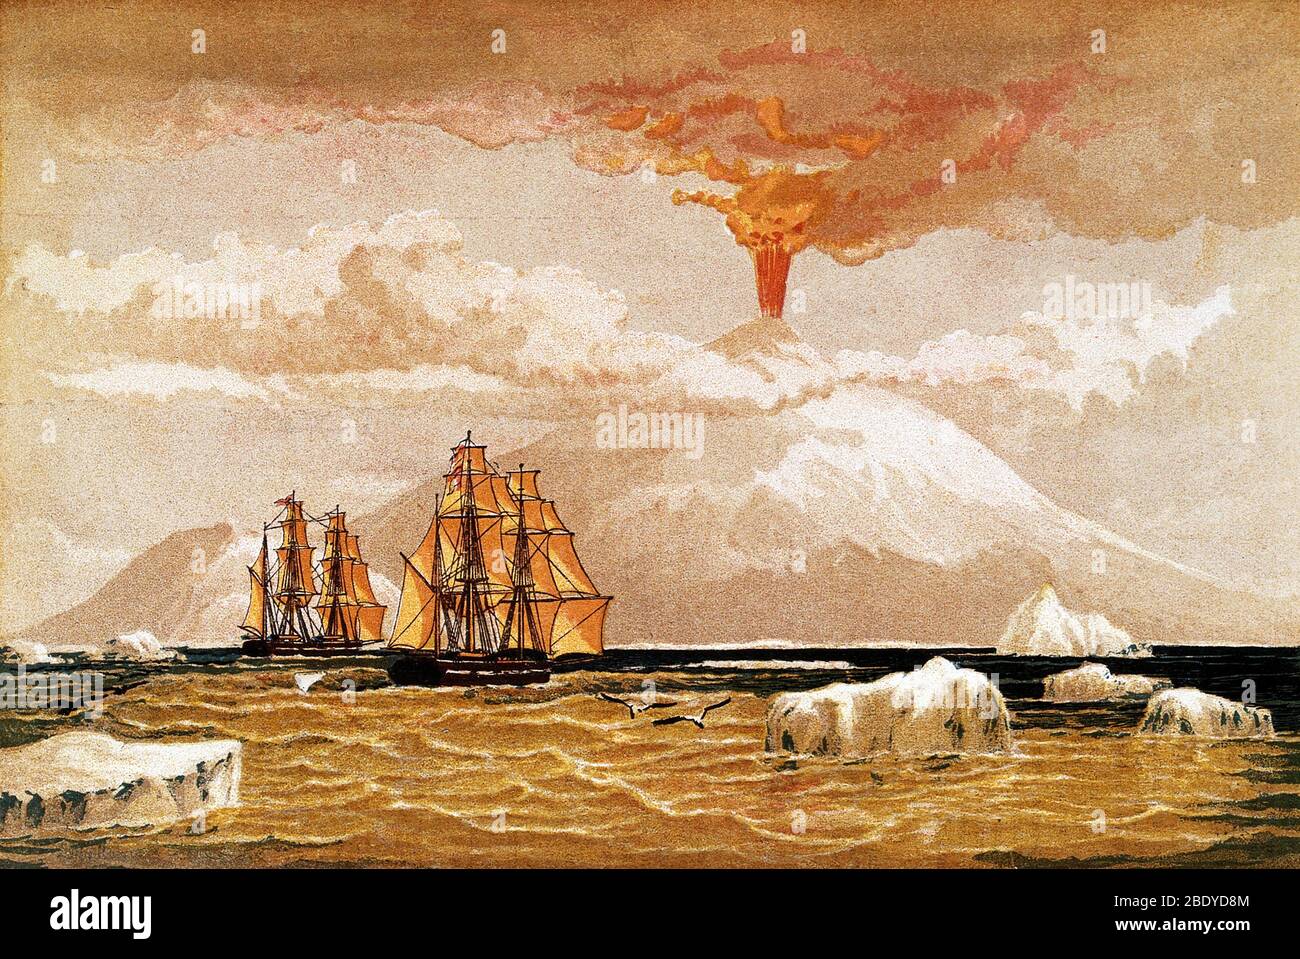 Mont Erebus, Antarctique : le volcan en éruption. Chromolithographe de 1868. Le mont Erebus a été découvert le 27 janvier 1841 (et a été observé comme en éruption) par l'explorateur polaire Sir James Clark Ross qui l'a nommé et son compagnon, le mont Terror, après ses navires, Erebus et Terror. Présent avec Ross sur l'Erebus était le jeune Joseph Hooker, futur président de la Société royale. Le mont Erebus est le volcan le plus au sud de la terre et le volcan le plus actif de l'Antarctique, avec une altitude de sommet de 3 794 mètres (12 448 pi). Il est situé sur l'île Ross. Banque D'Images